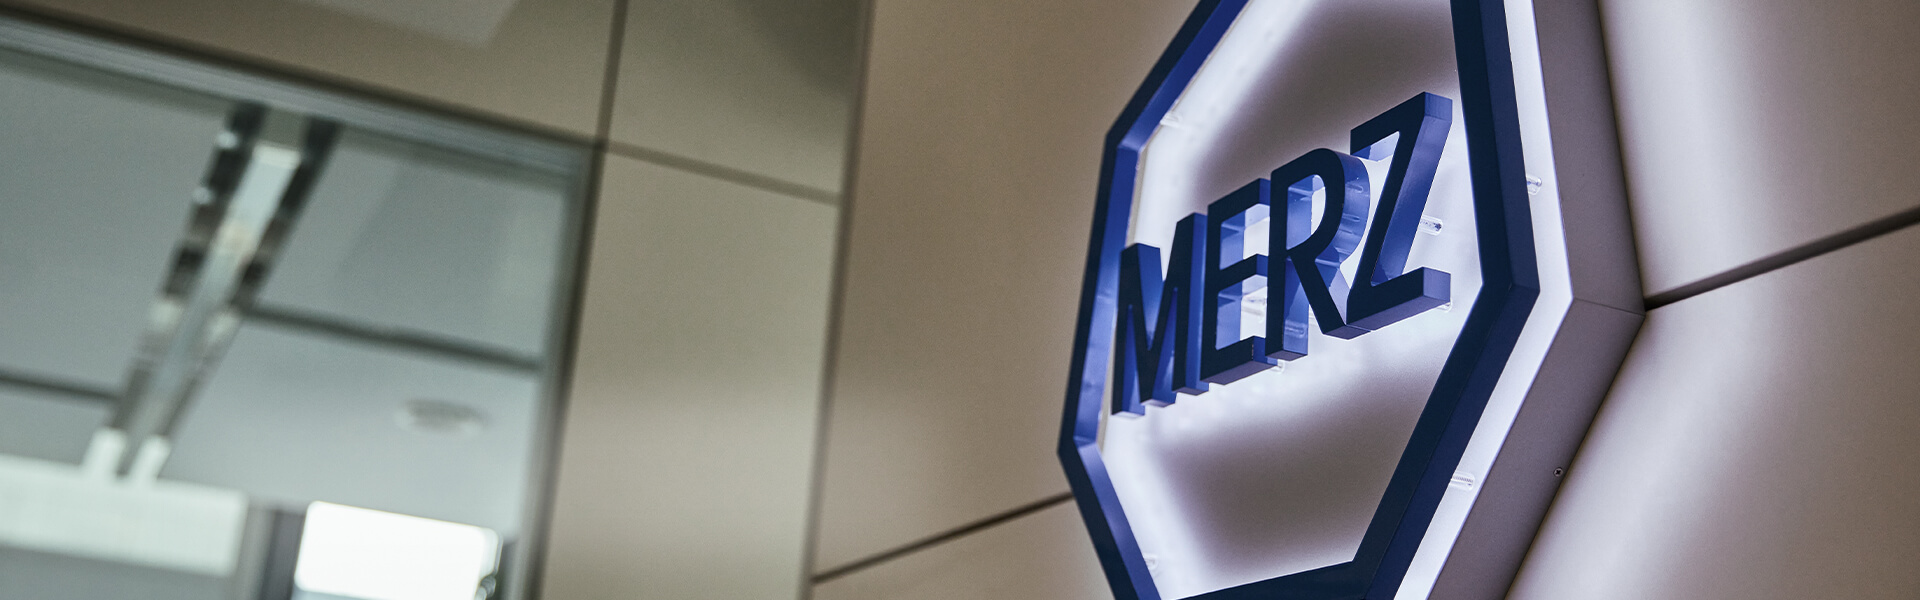 Merz - Eine erfolgreiche Unternehmensgeschichte